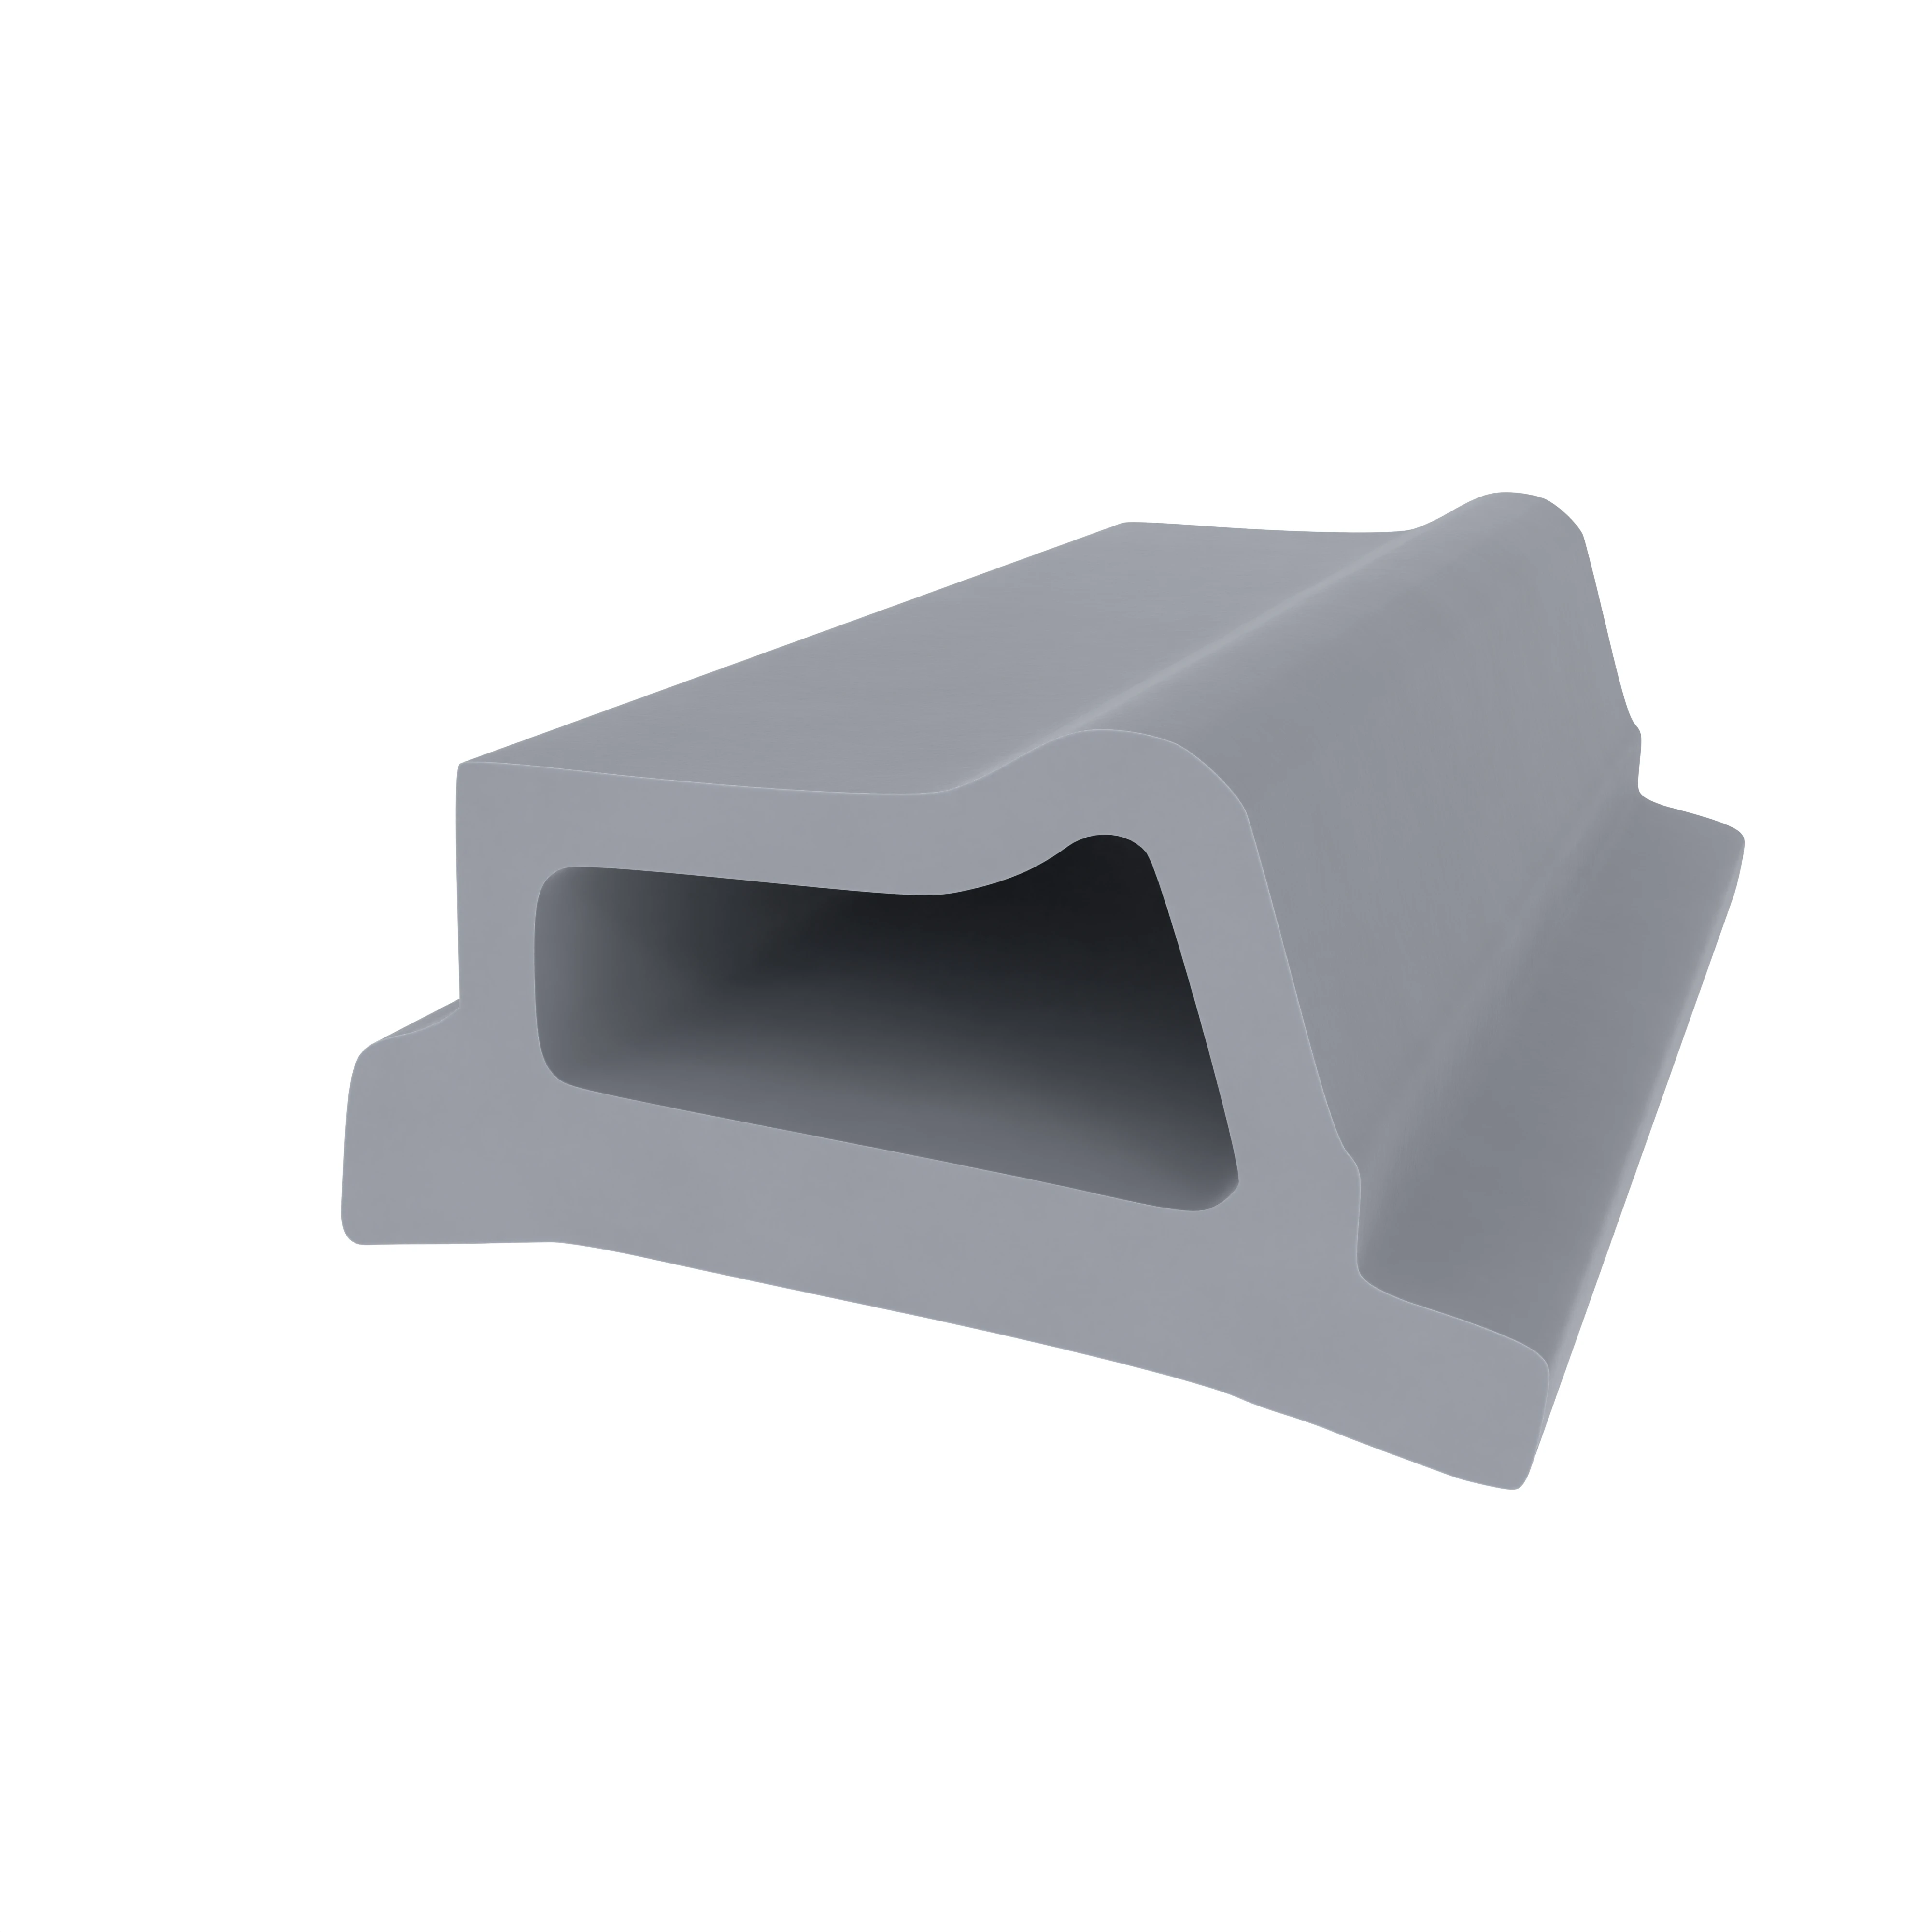 Stahlzargendichtung für Stahlrahmen | 11 mm Höhe | Farbe: grau